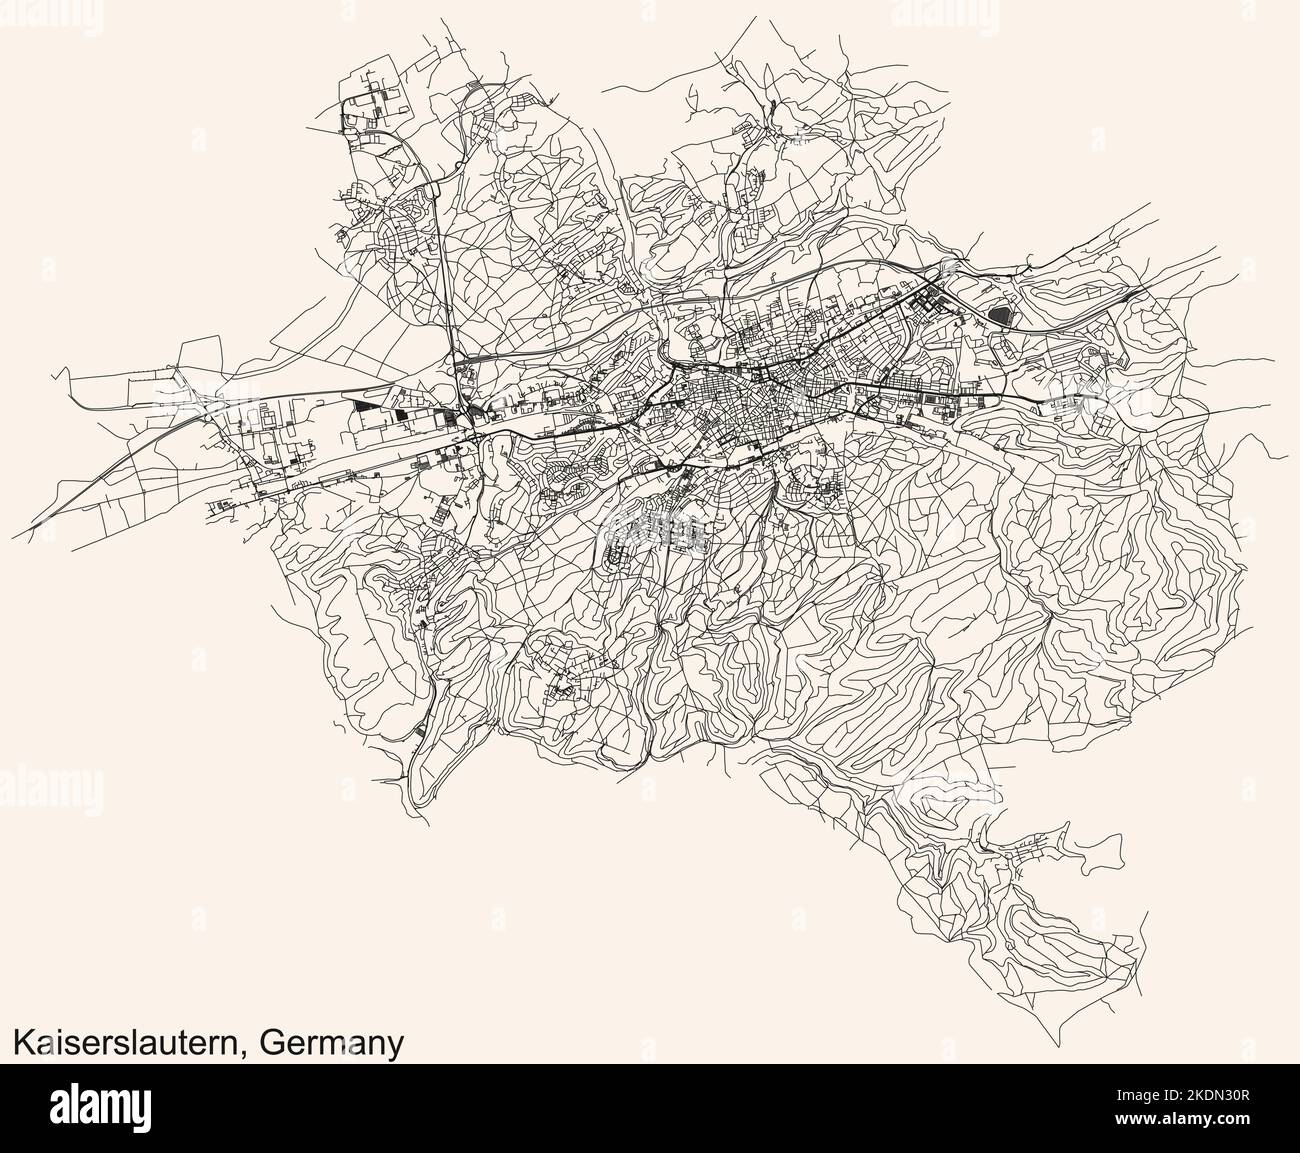 Navigation détaillée lignes noires rues urbaines carte de la capitale régionale allemande de KAISERSLAUTERN, ALLEMAGNE sur fond beige vintage Illustration de Vecteur